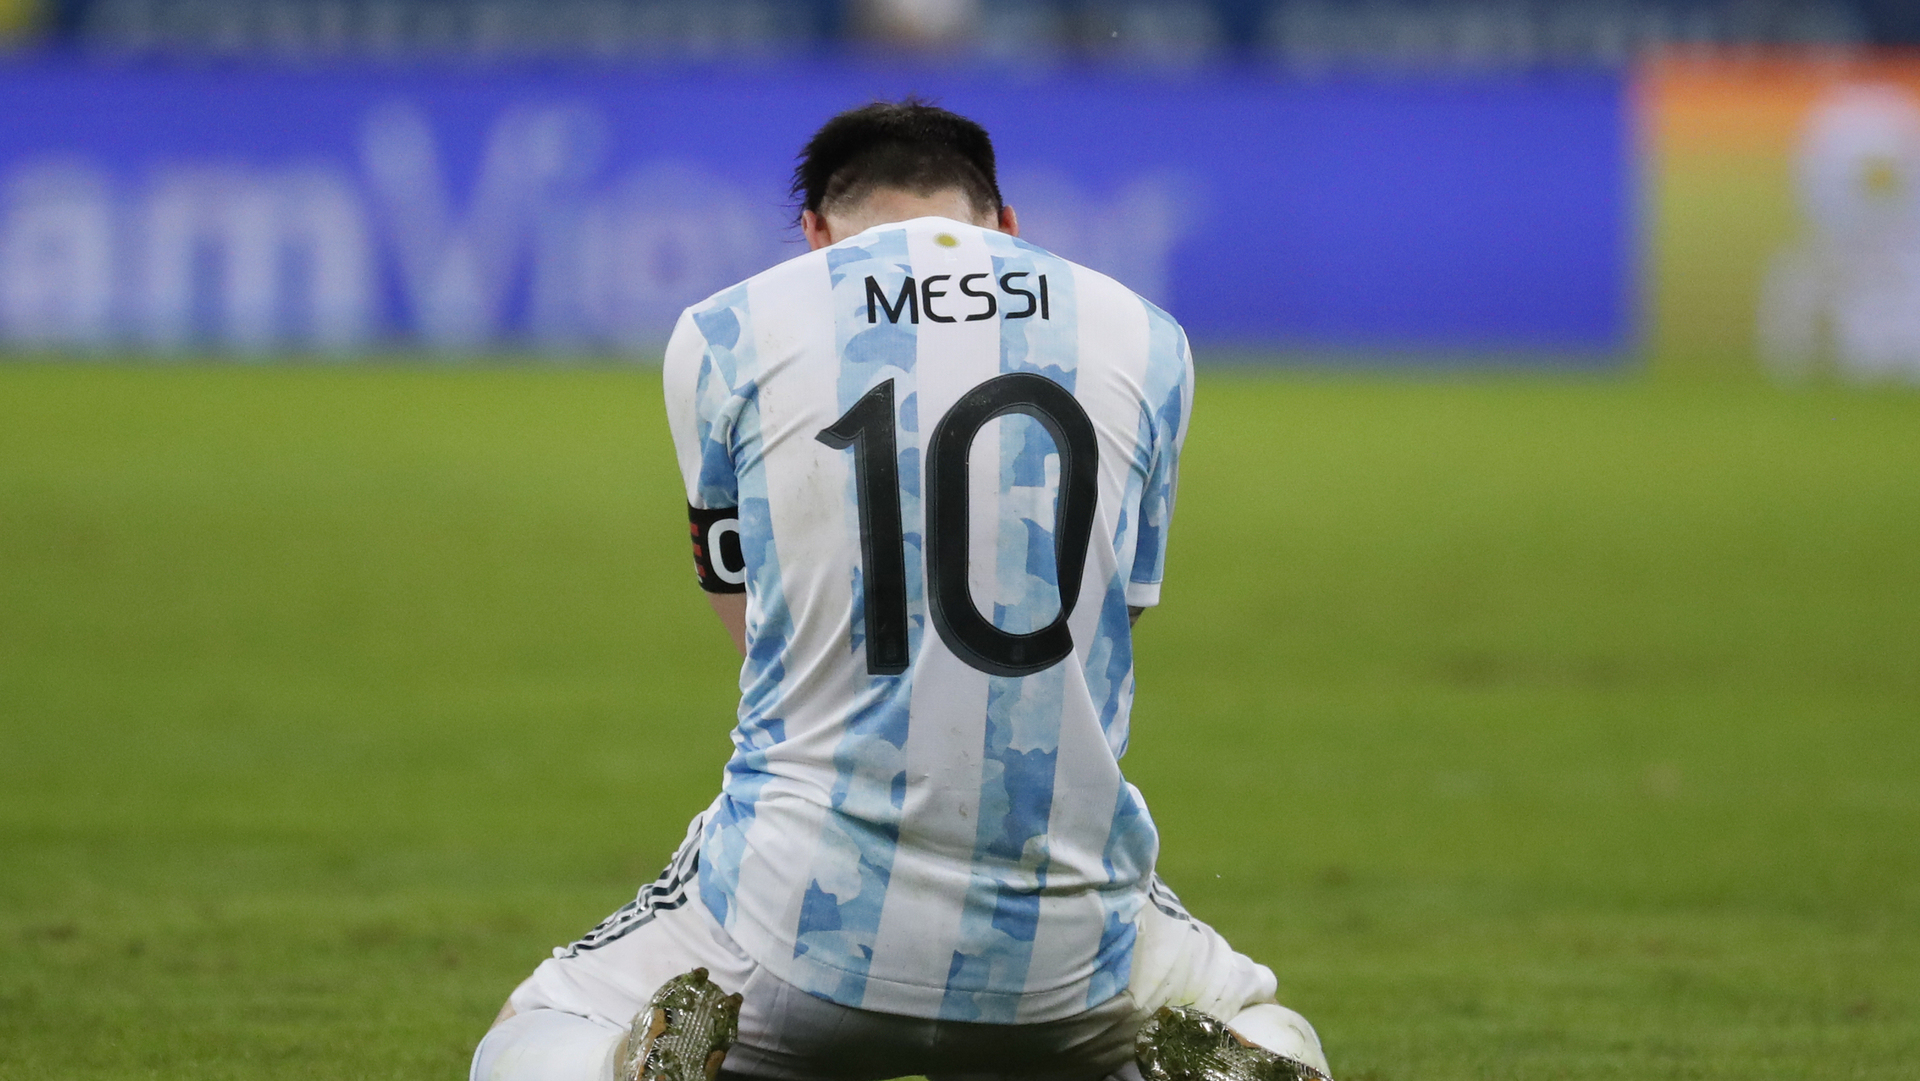 ליאו מסי בוכה על כר הדשא אחרי ש ארגנטינה ניצחה את ברזיל ב גמר הקופה אמריקה